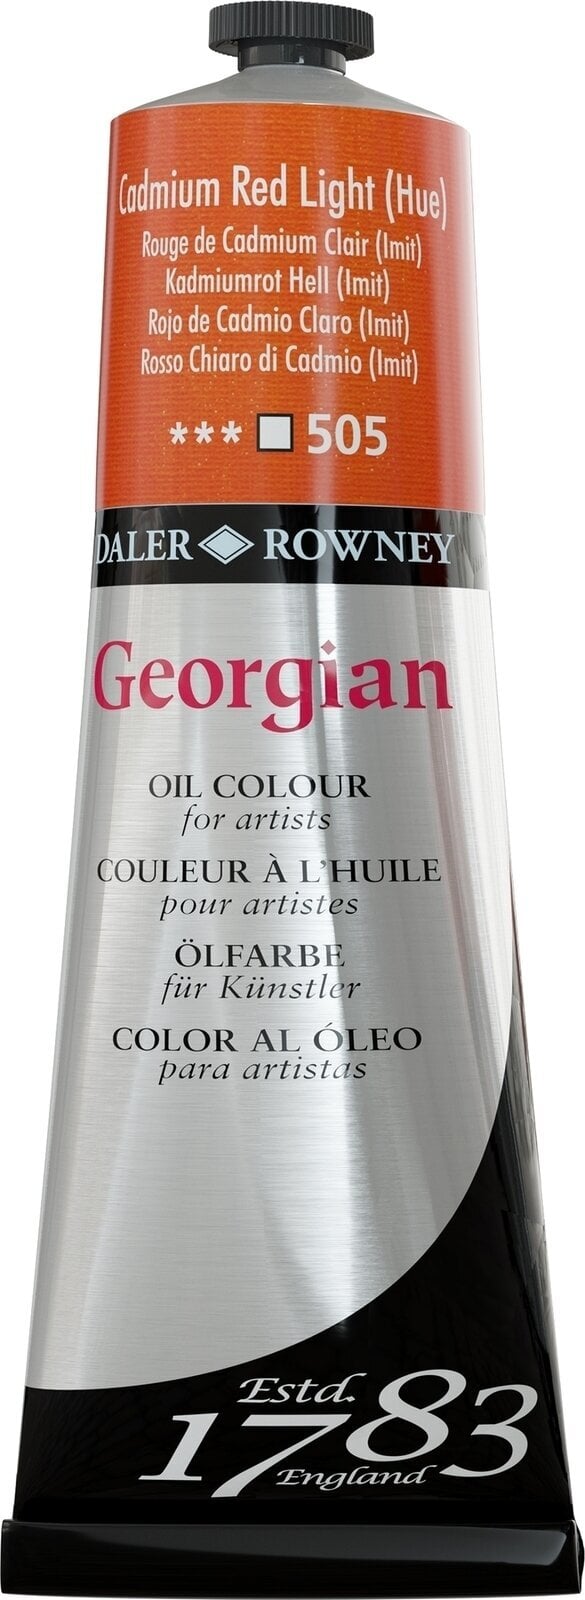 Ölfarbe Daler Rowney Georgian Ölgemälde Cadmium Red Light Hue 225 ml 1 Stck